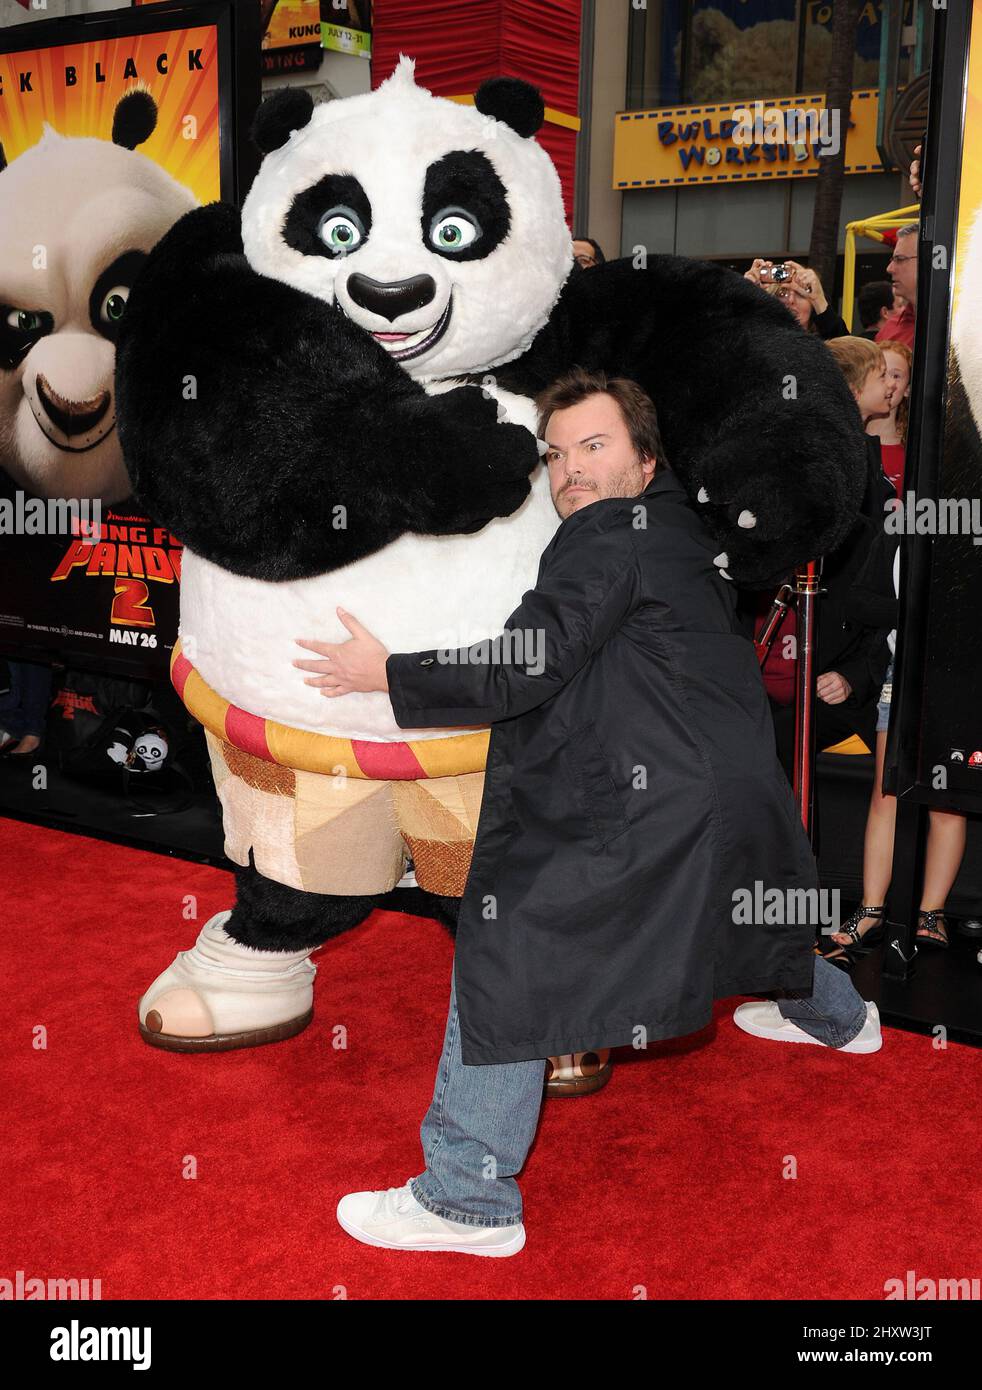 Jack Black at the 'Kung Fu Panda 2' premiere held at Grauman's Chinese ...